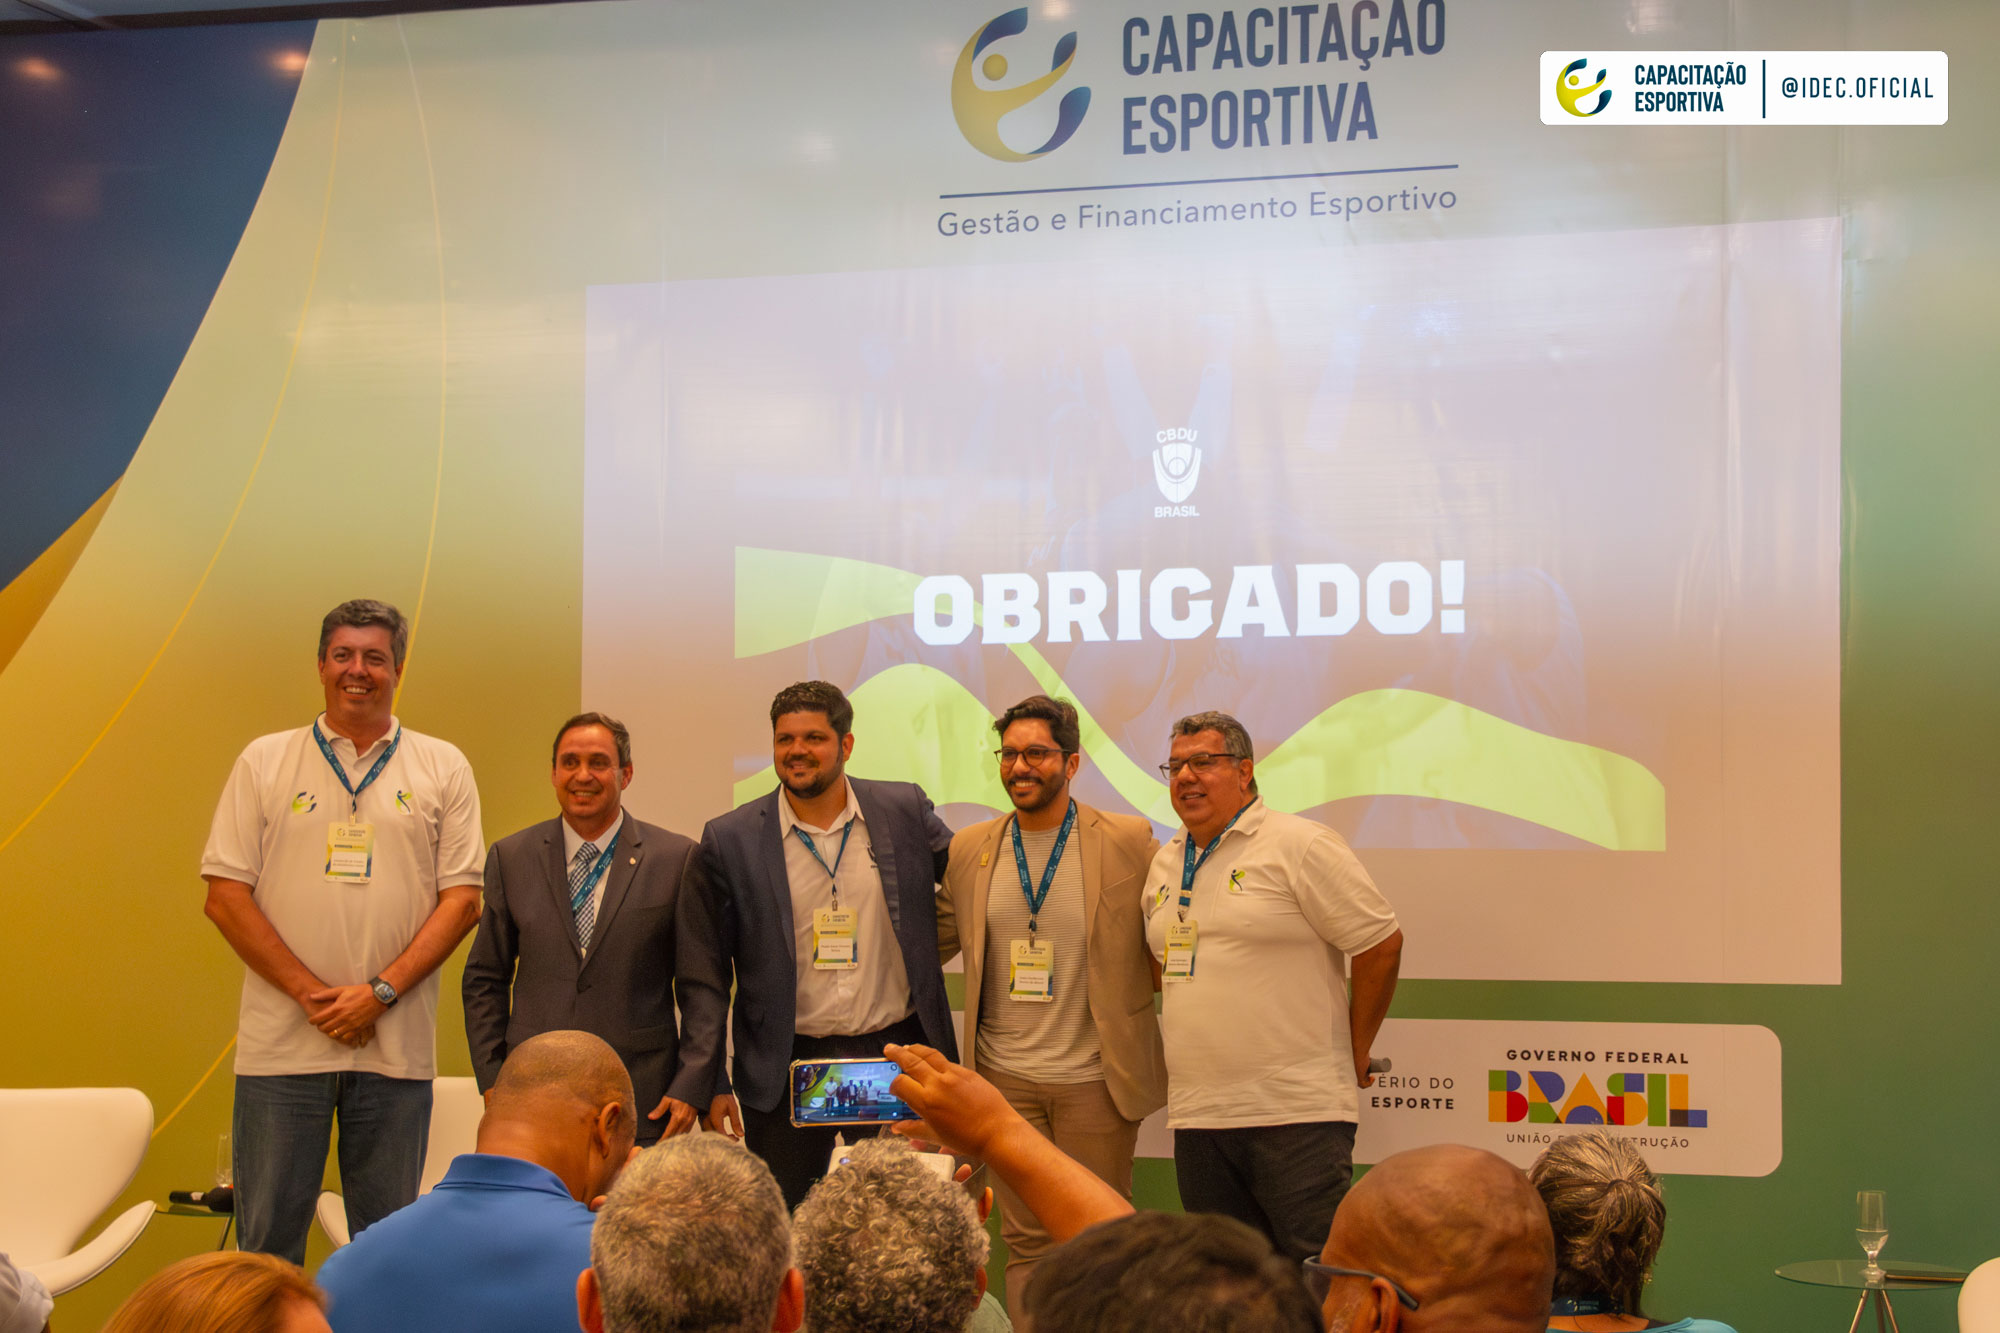 Team Brazil encerra em grande estilo o torneio coletivo de cheerleading do  JUBs Brasília 2022 – Confederação Brasileira do Desporto Universitário